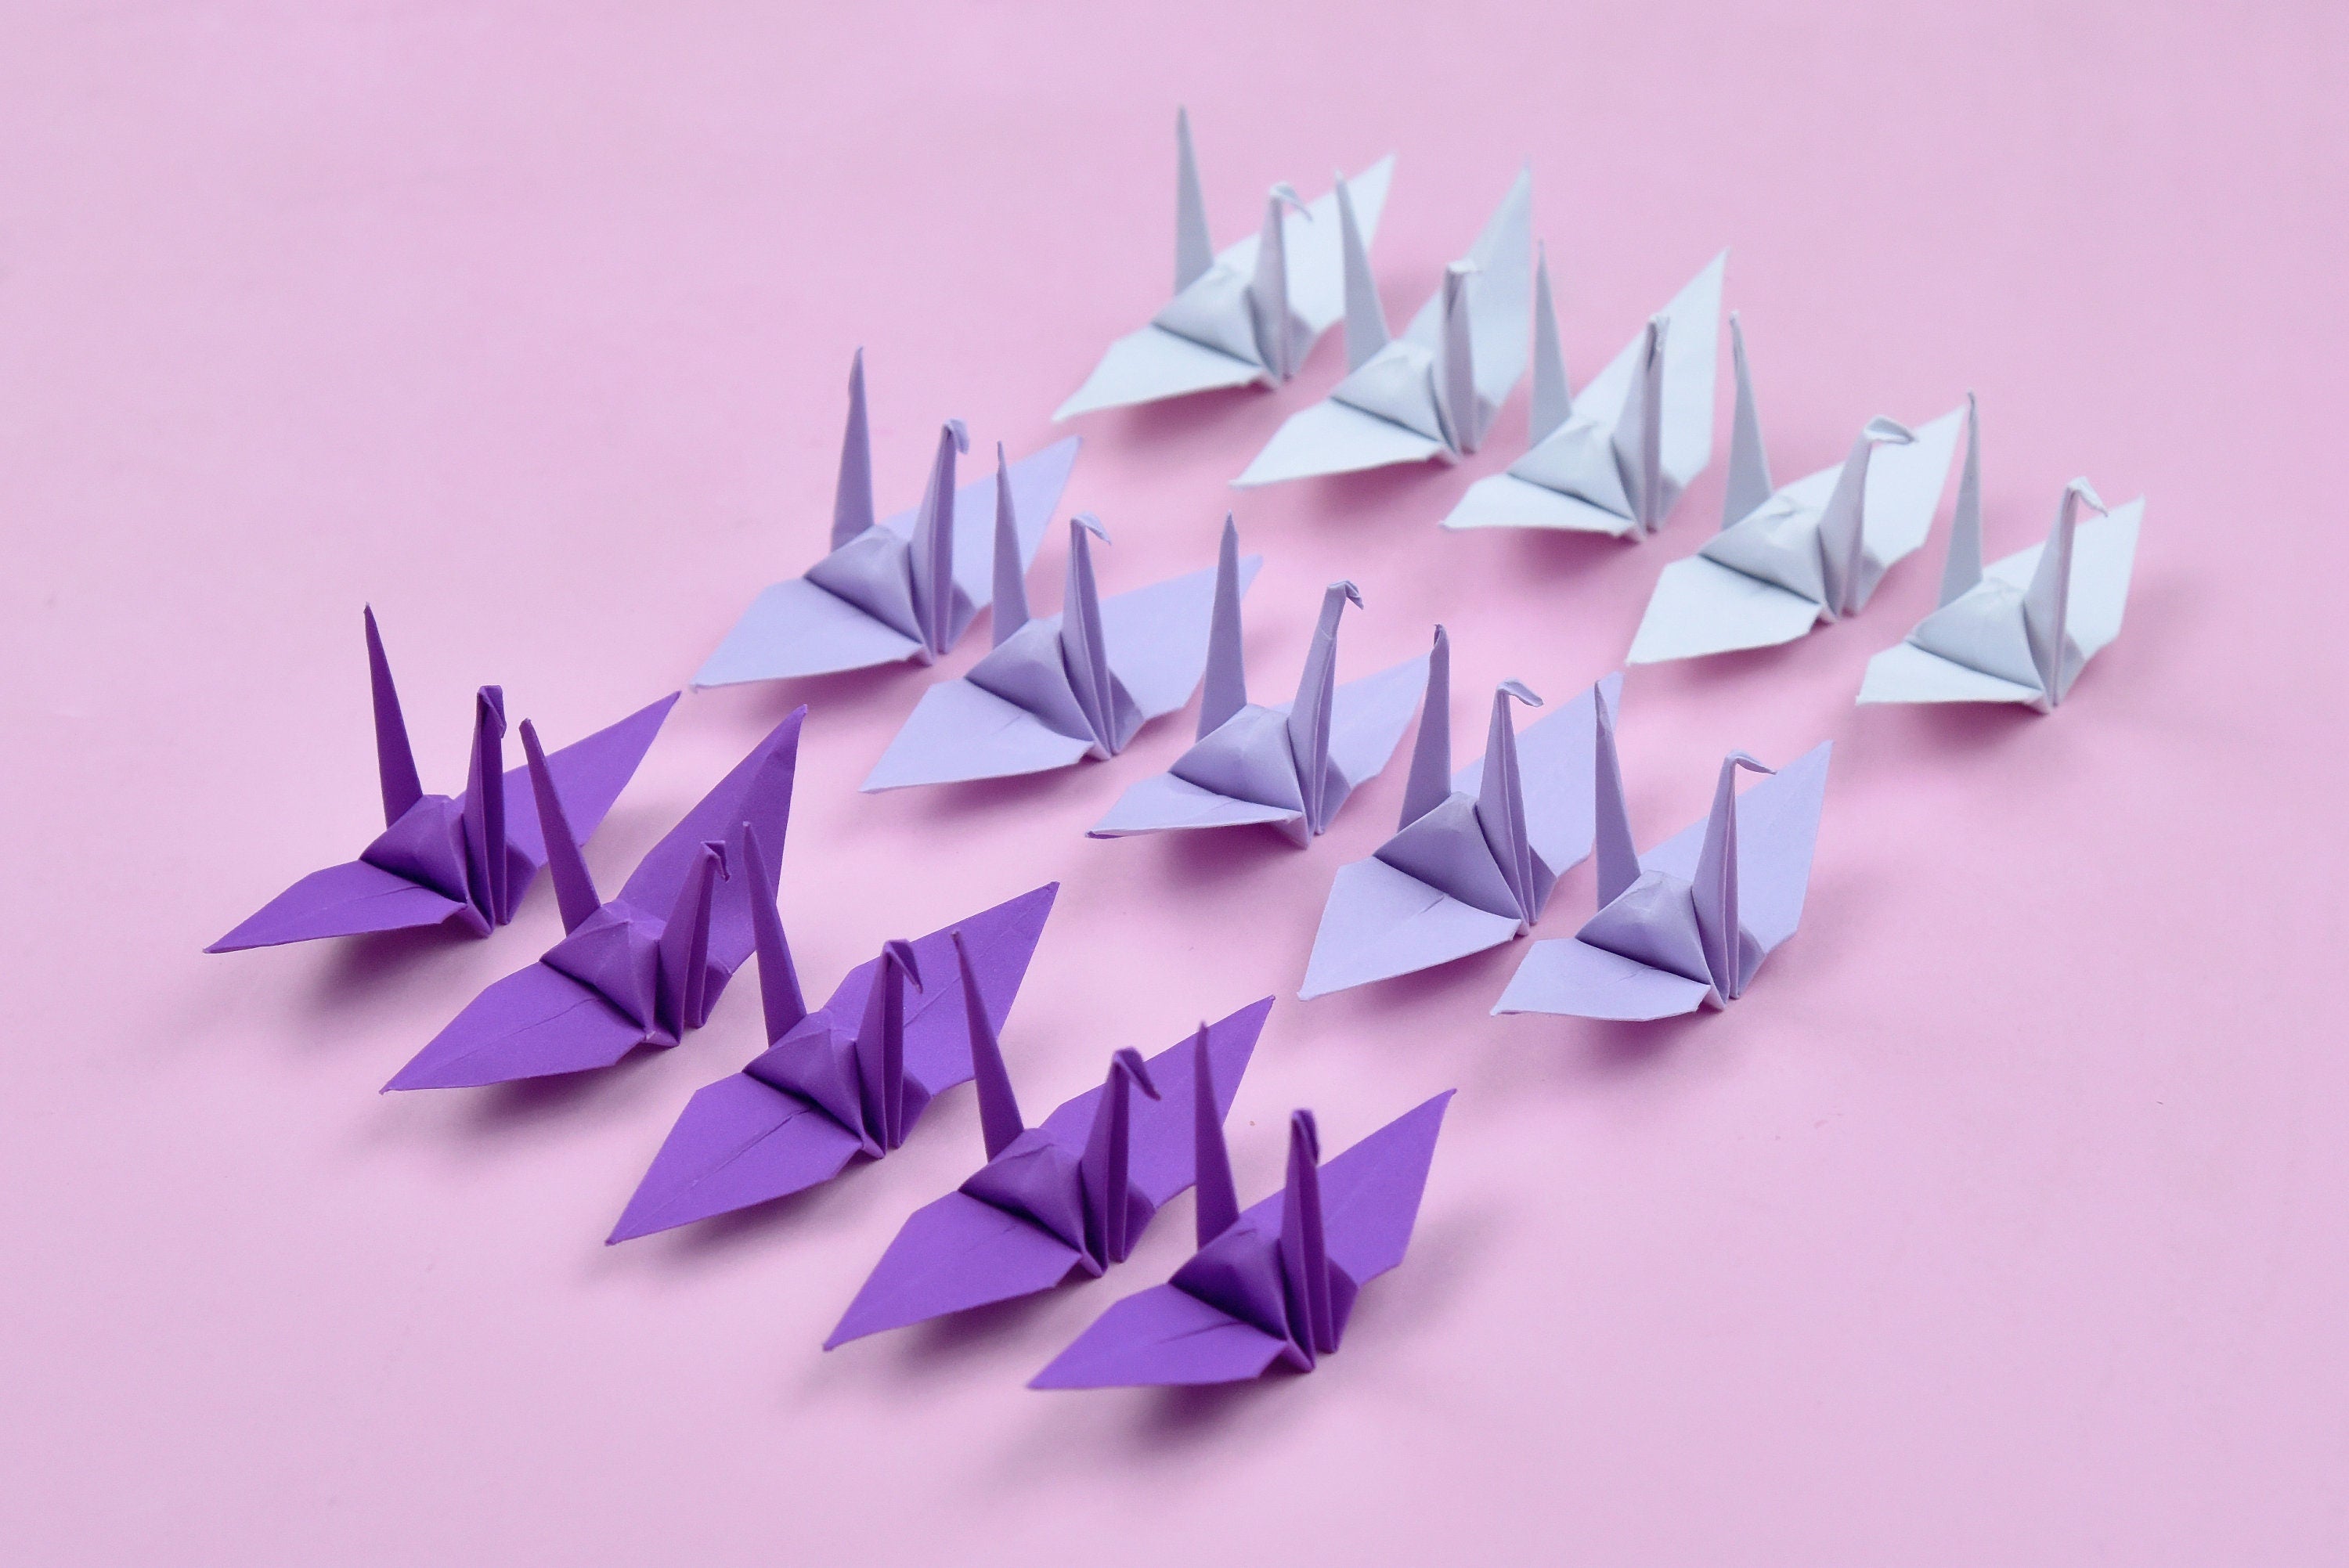 1000 Origami Paper Crane Purple Tone - 3x3 inches - Pre-Made - Origami crane for Wedding Decor, Anniversary Gift, Valentines, Backdrop